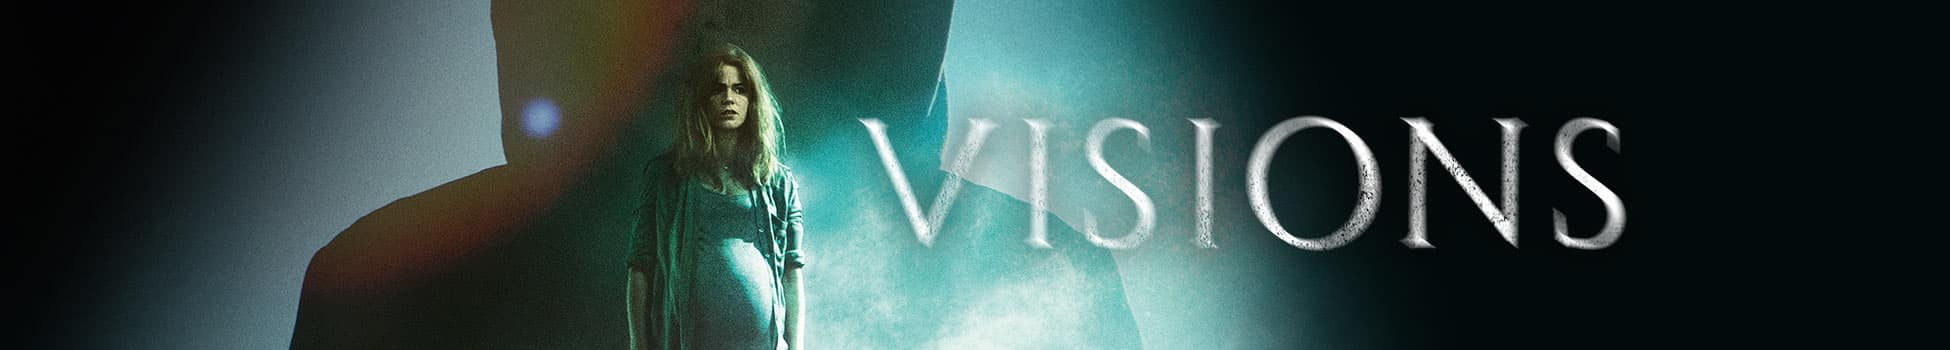 Visions - Artwork - Key Visual - Header